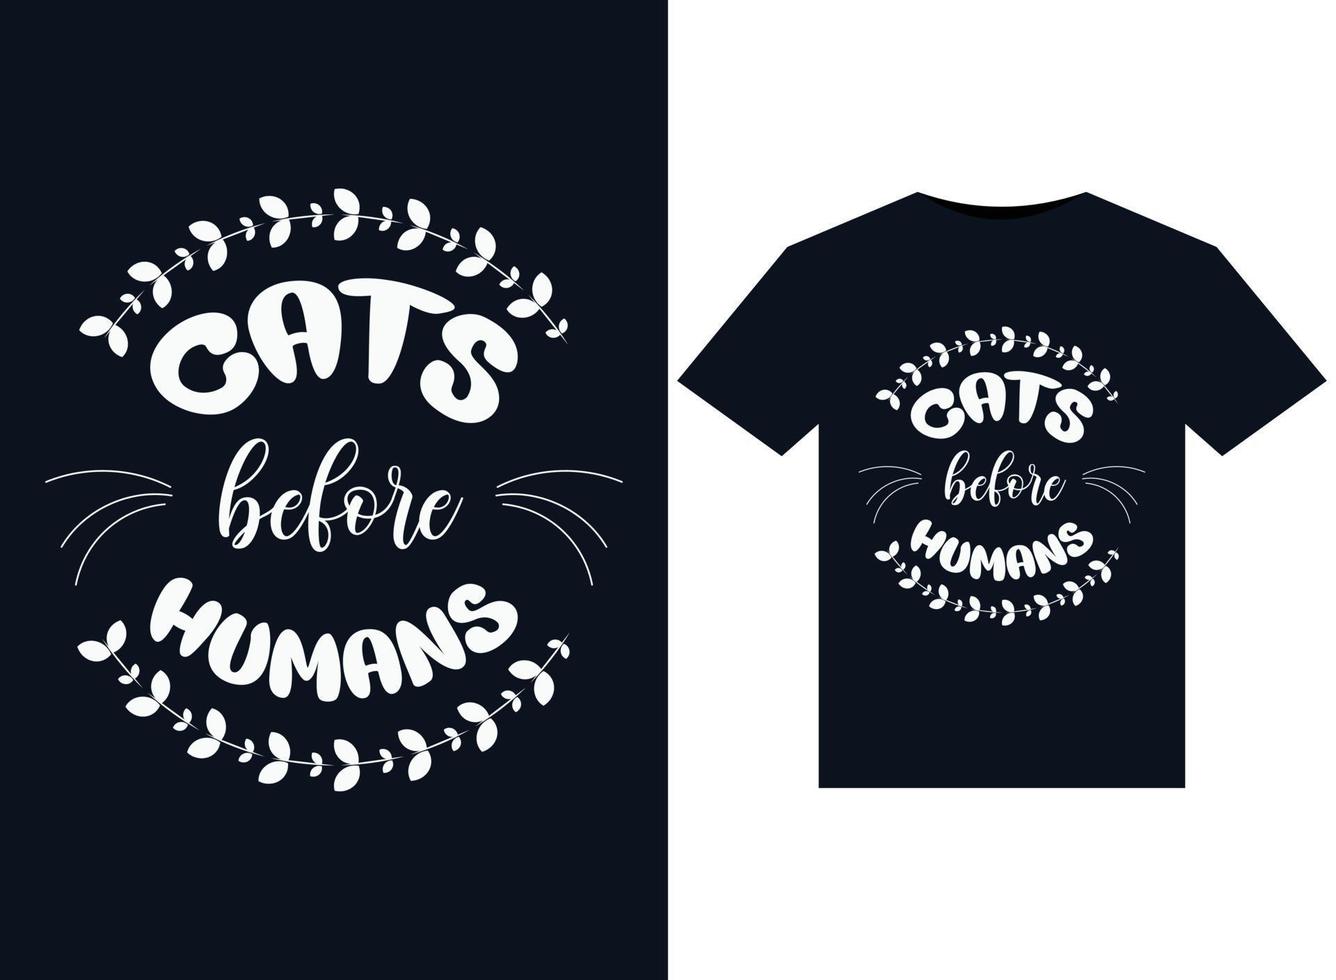 katten voordat mensen illustraties voor drukklare t-shirts ontwerp vector